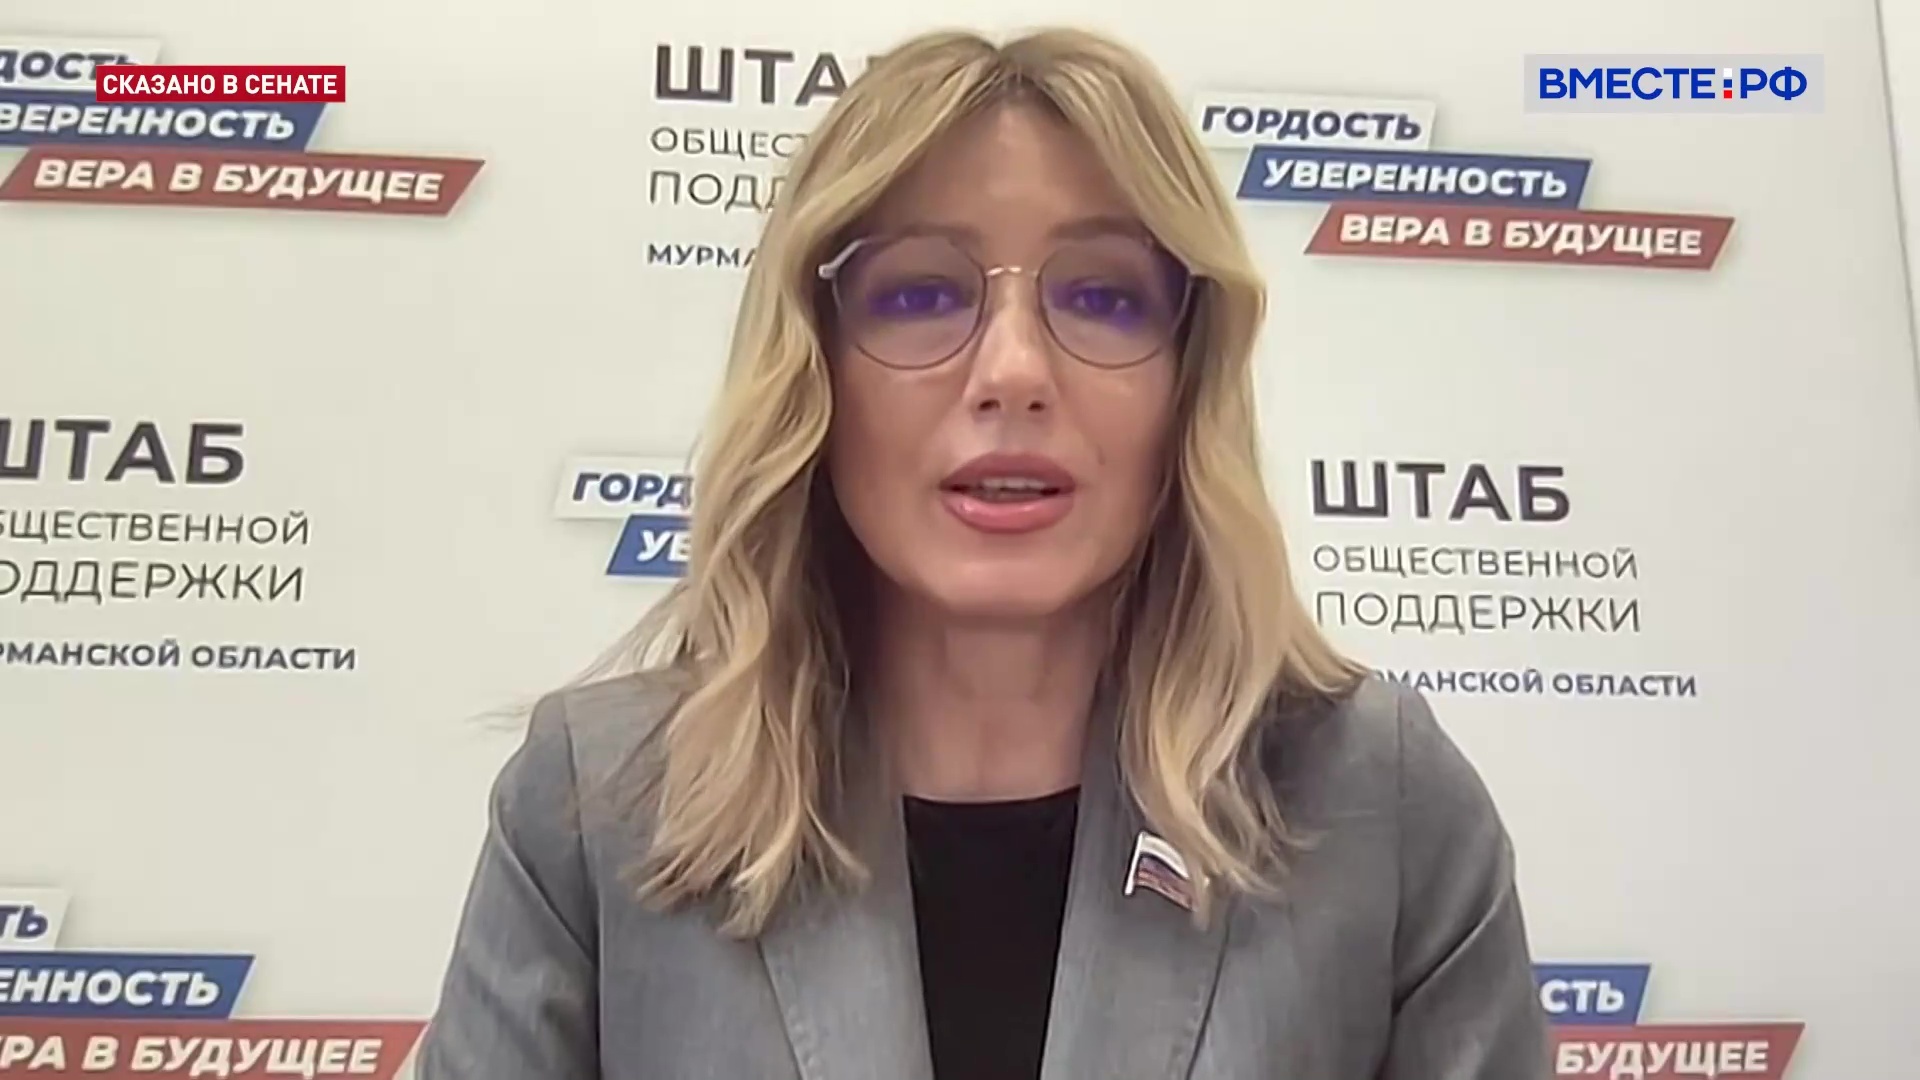 Мурманская область готова к проведению выборов, заявила сенатор Сахарова